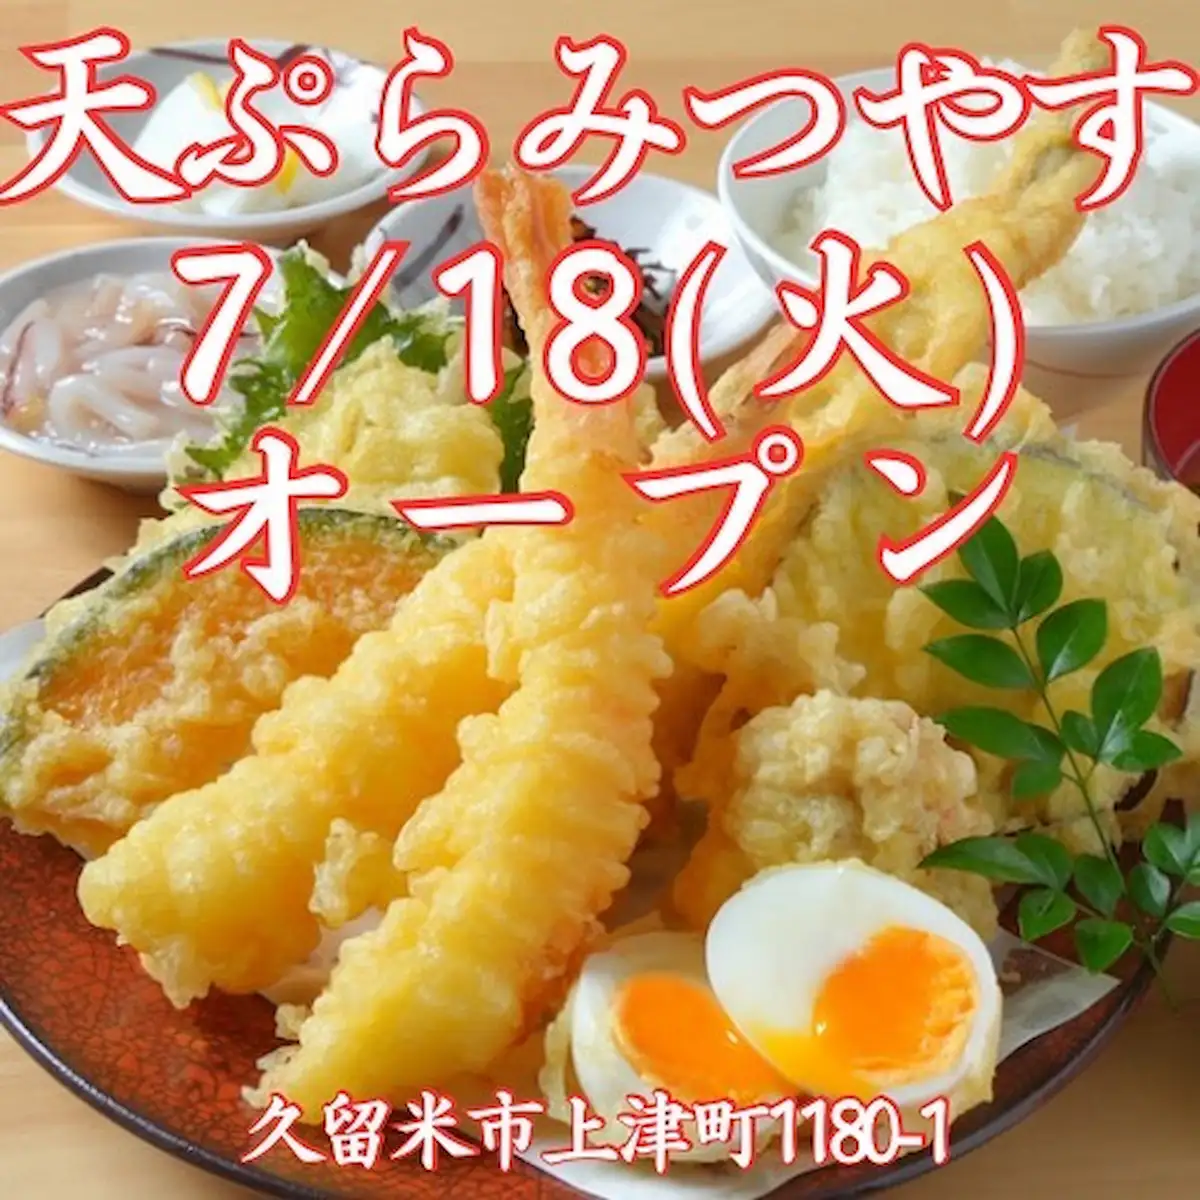 天ぷら みつやすが7月18日にオープンするみたい。上津荒木交差点の北側